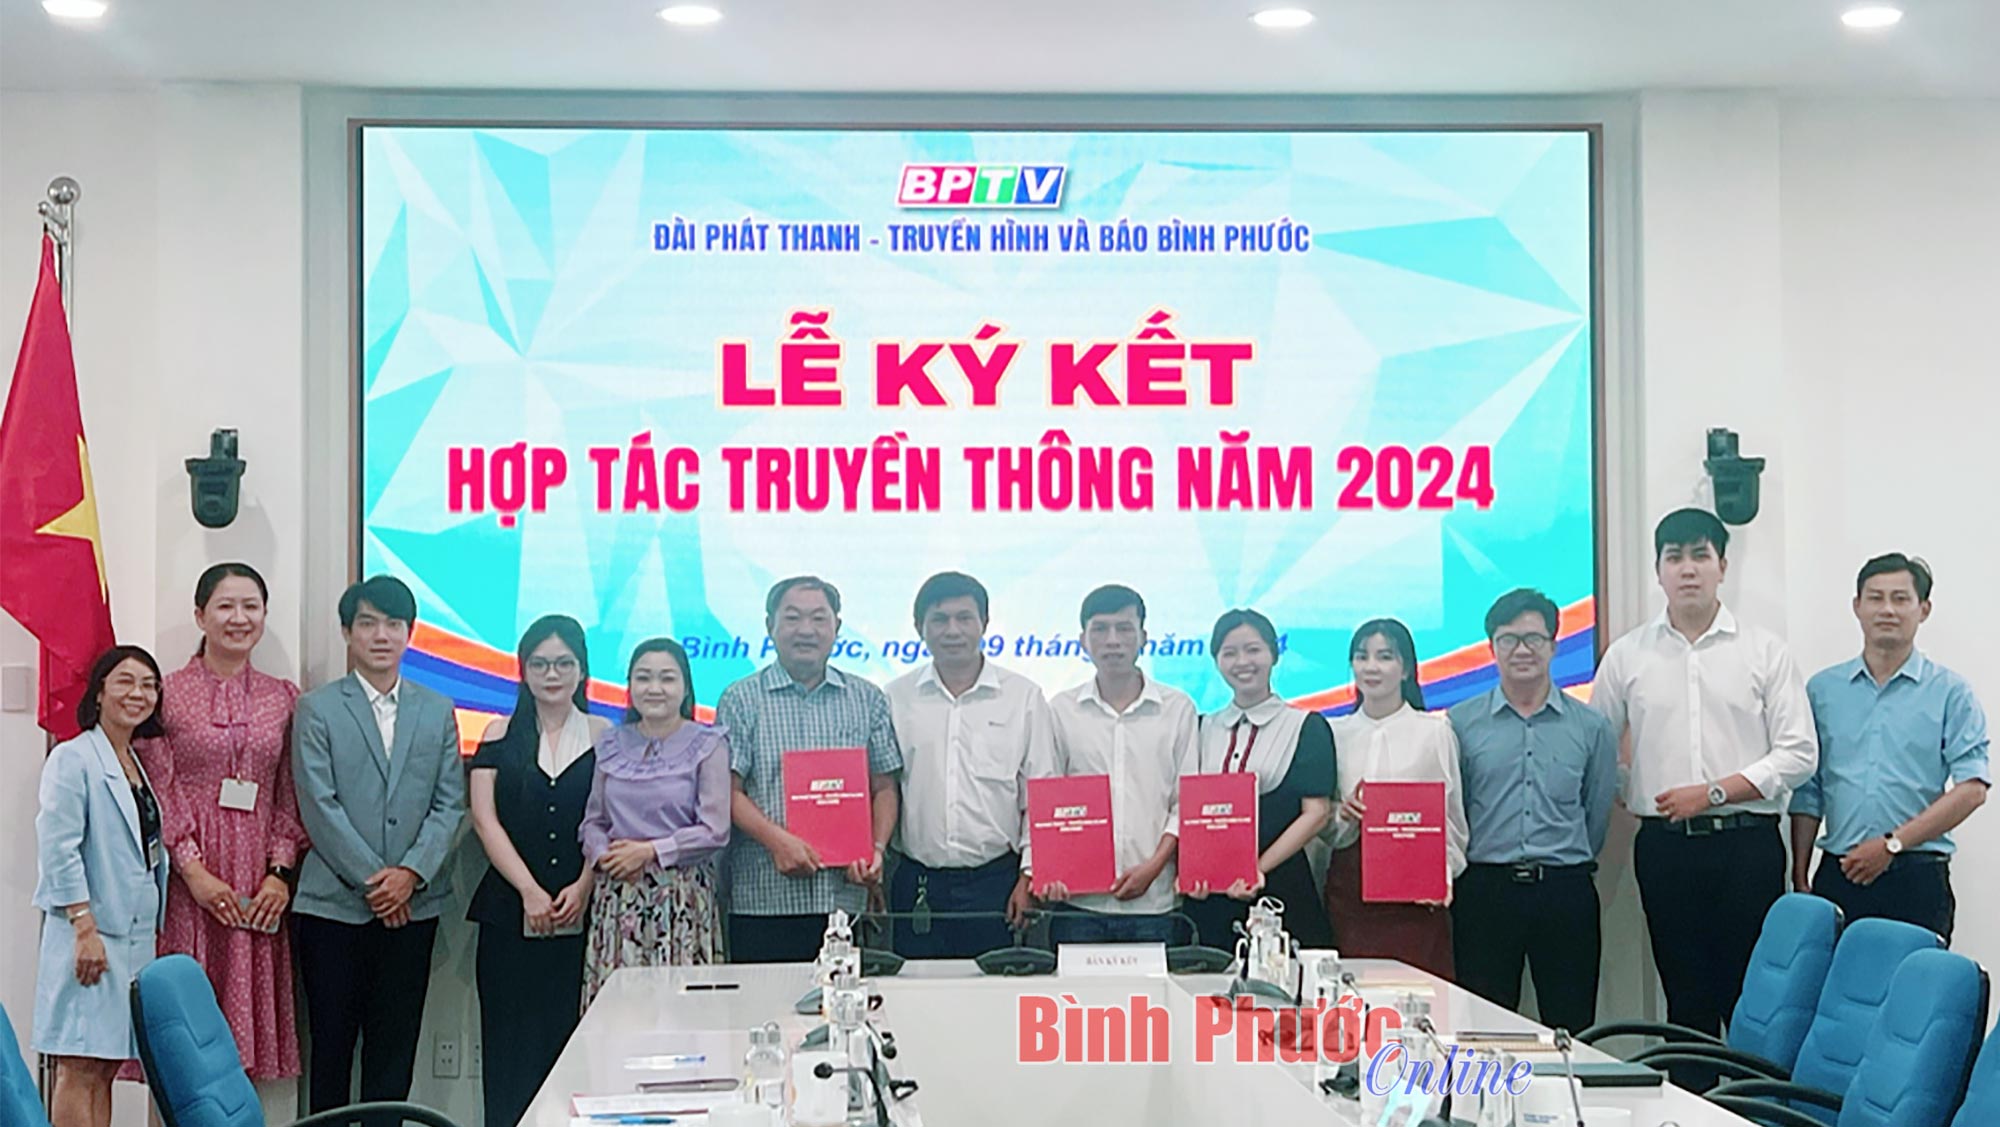 BPTV ký kết hợp tác truyền thông năm 2024